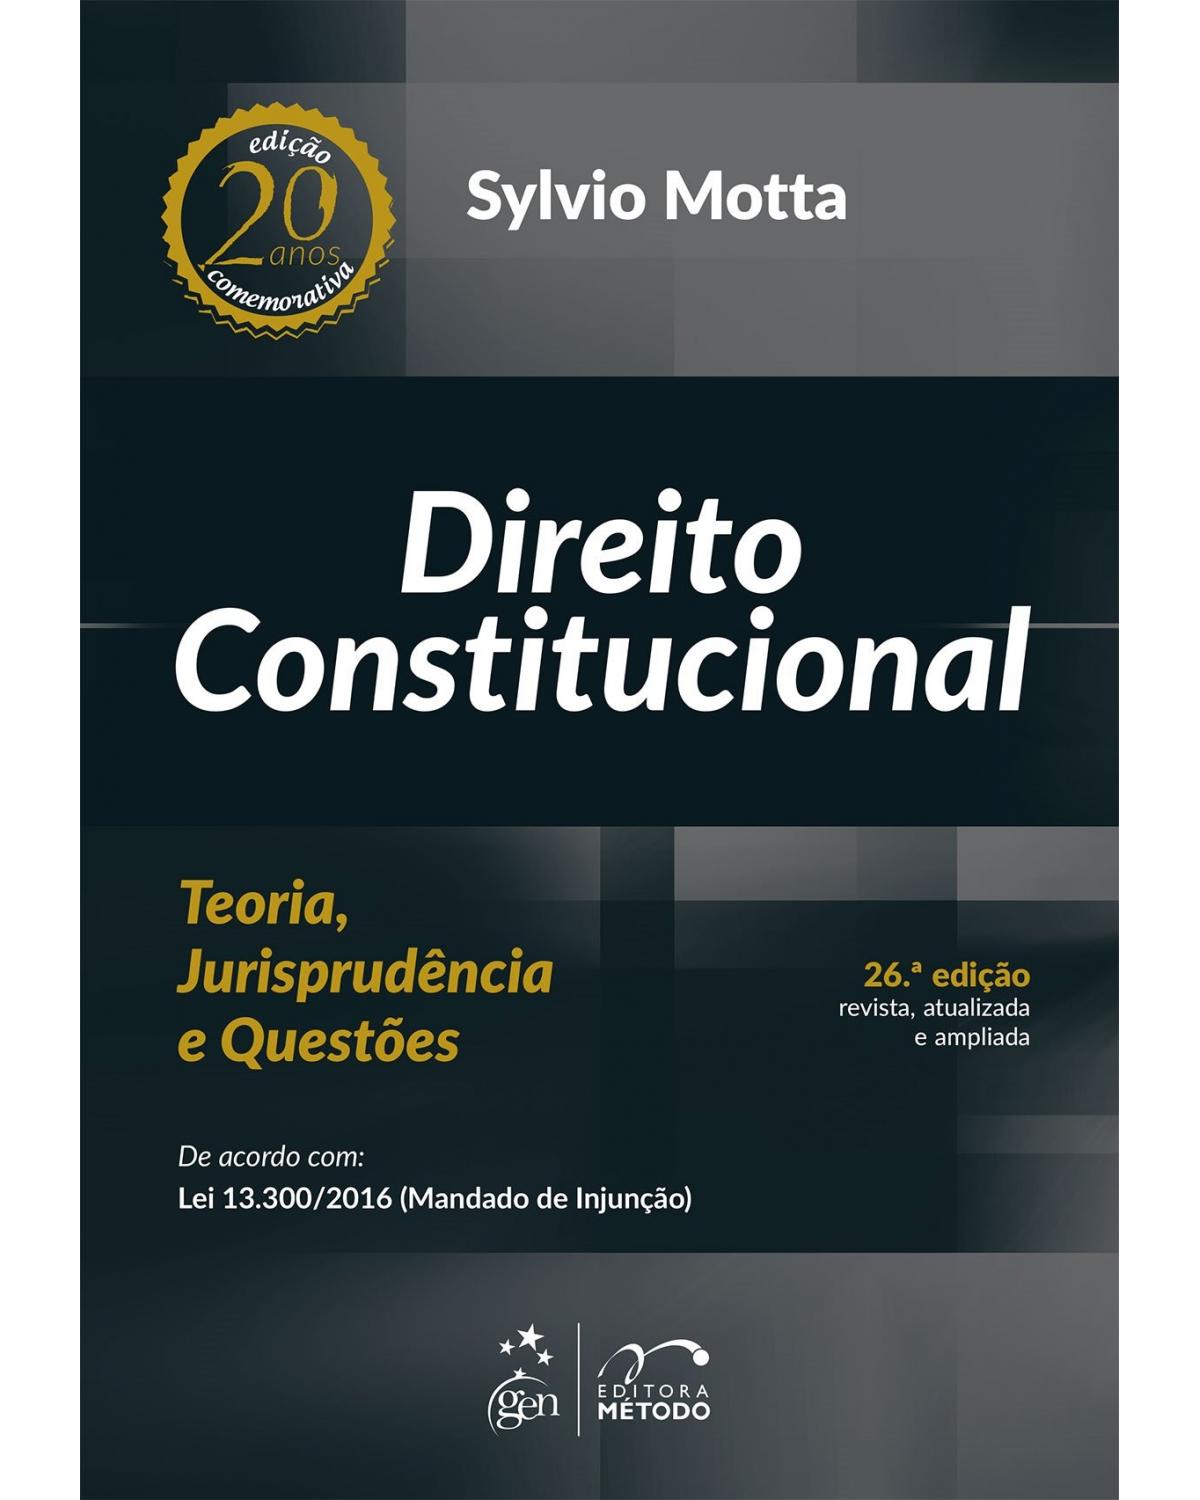 Direito constitucional: Teoria, jurisprudência e questões - 26ª Edição